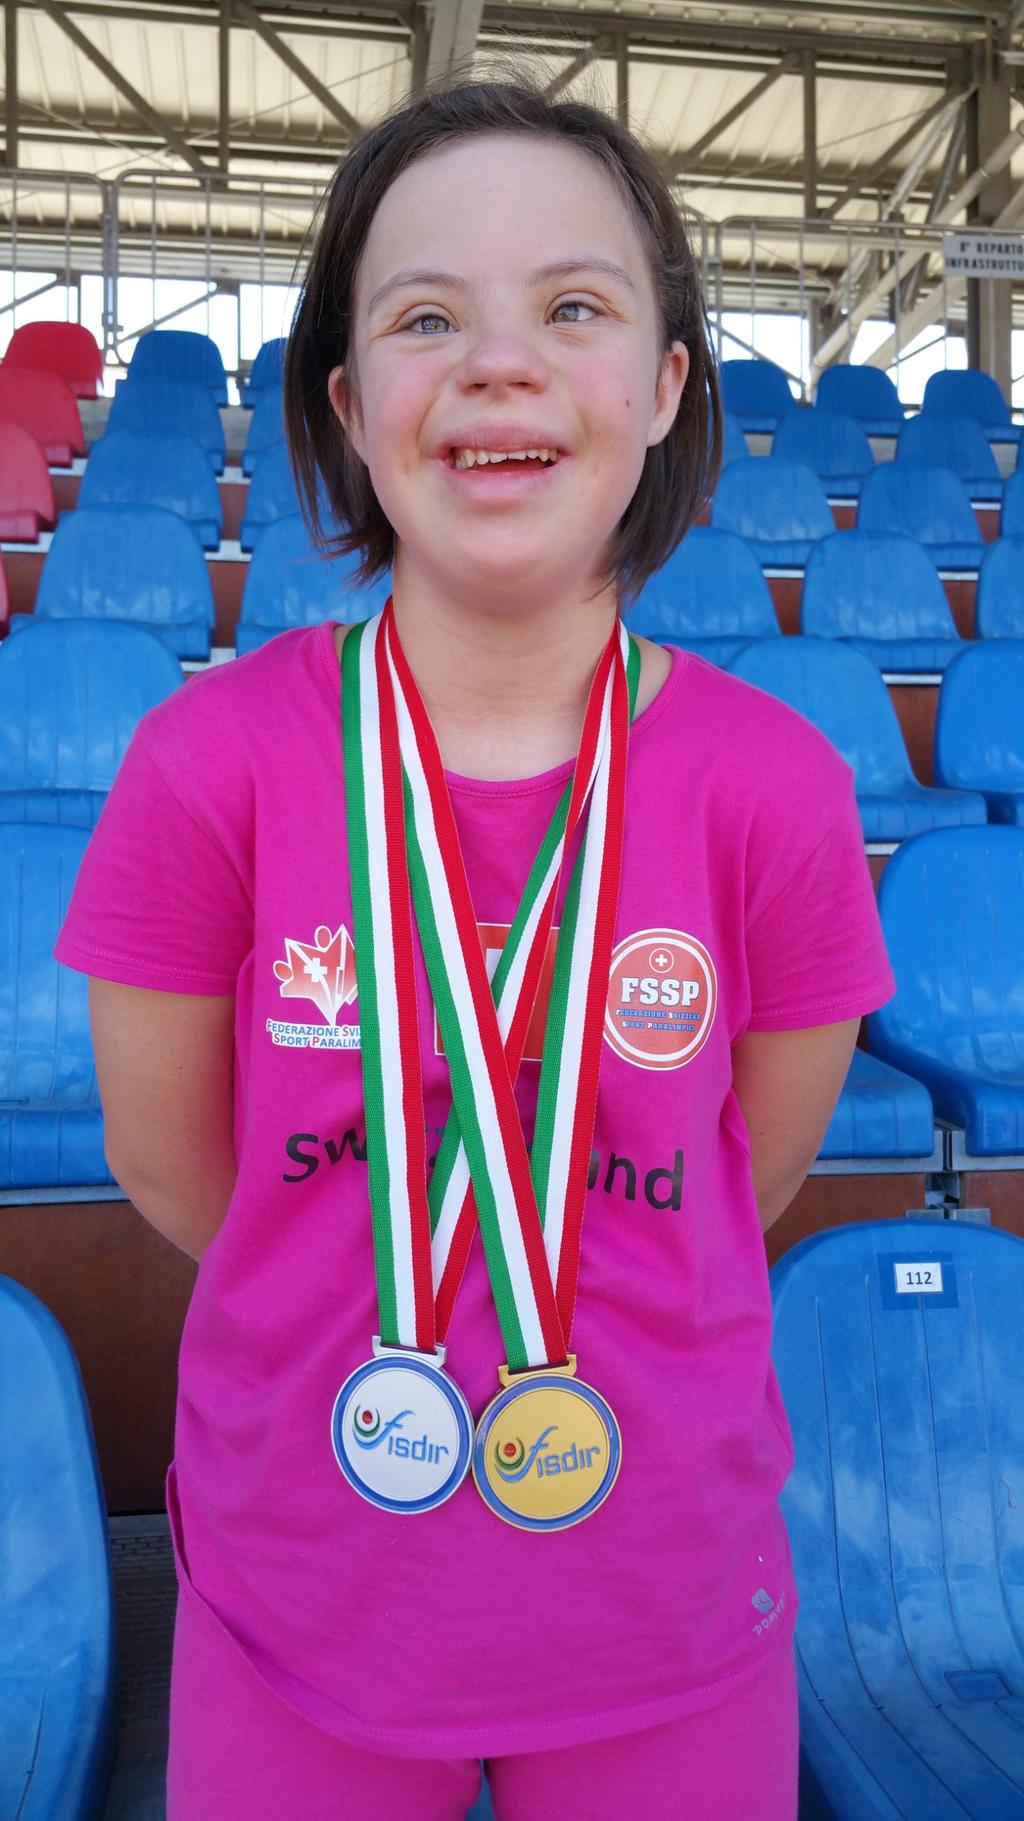 A maggio 2017 Chiara ha partecipato ai Regional Games di Special Olympics a Zurigo ed ha vinto nei 100 metri piani in 18.